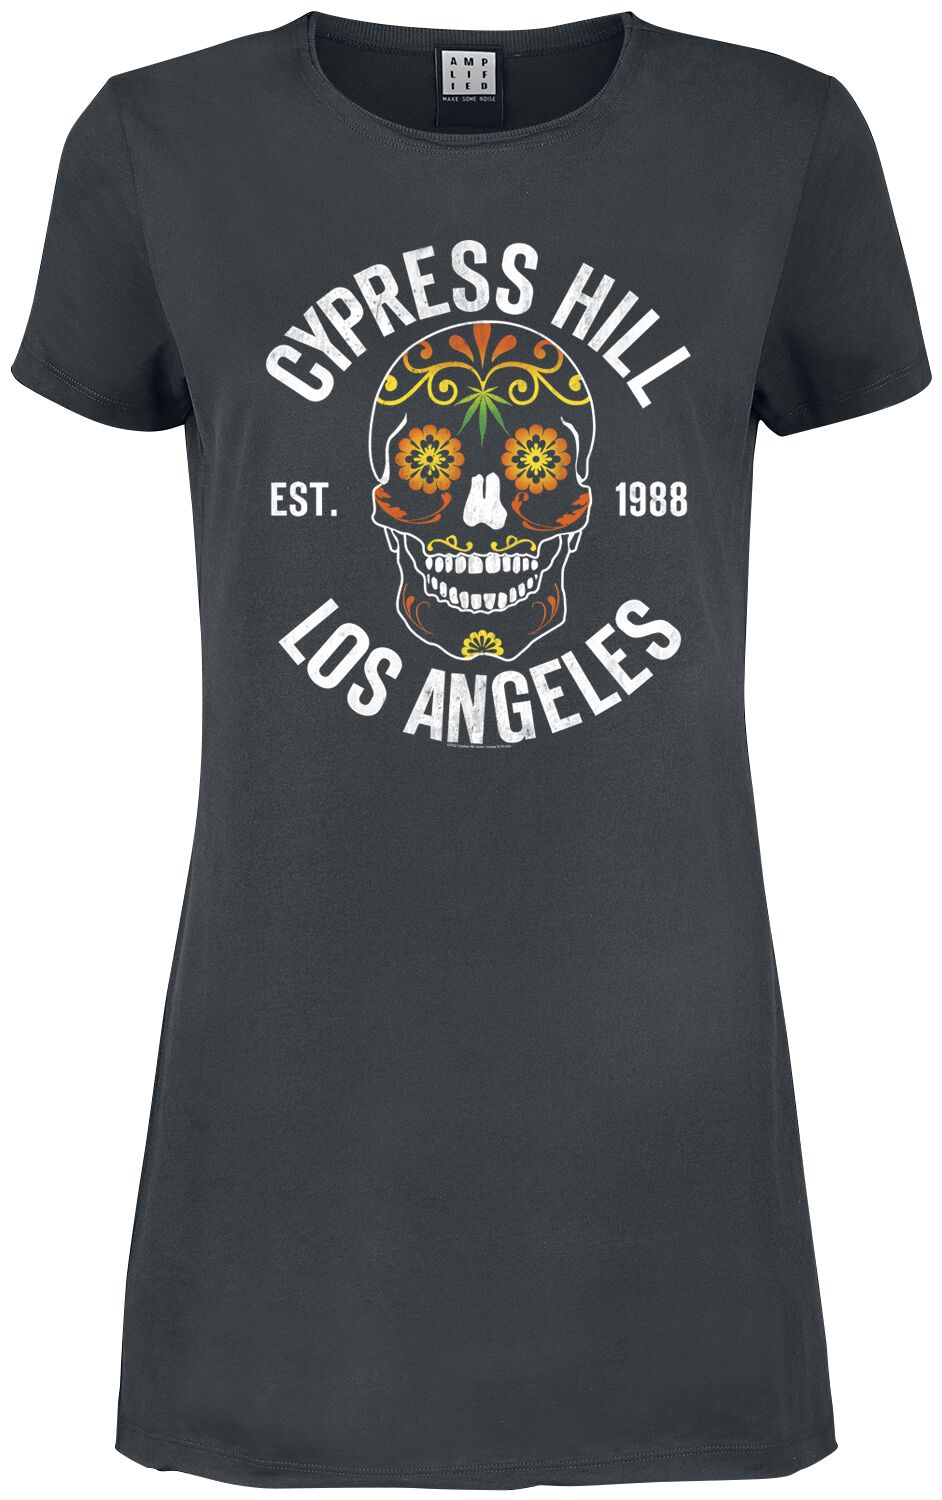 Cypress Hill Kurzes Kleid - Amplified Collection - Floral Skull - XS bis XXL - für Damen - Größe XS - charcoal  - Lizenziertes Merchandise!